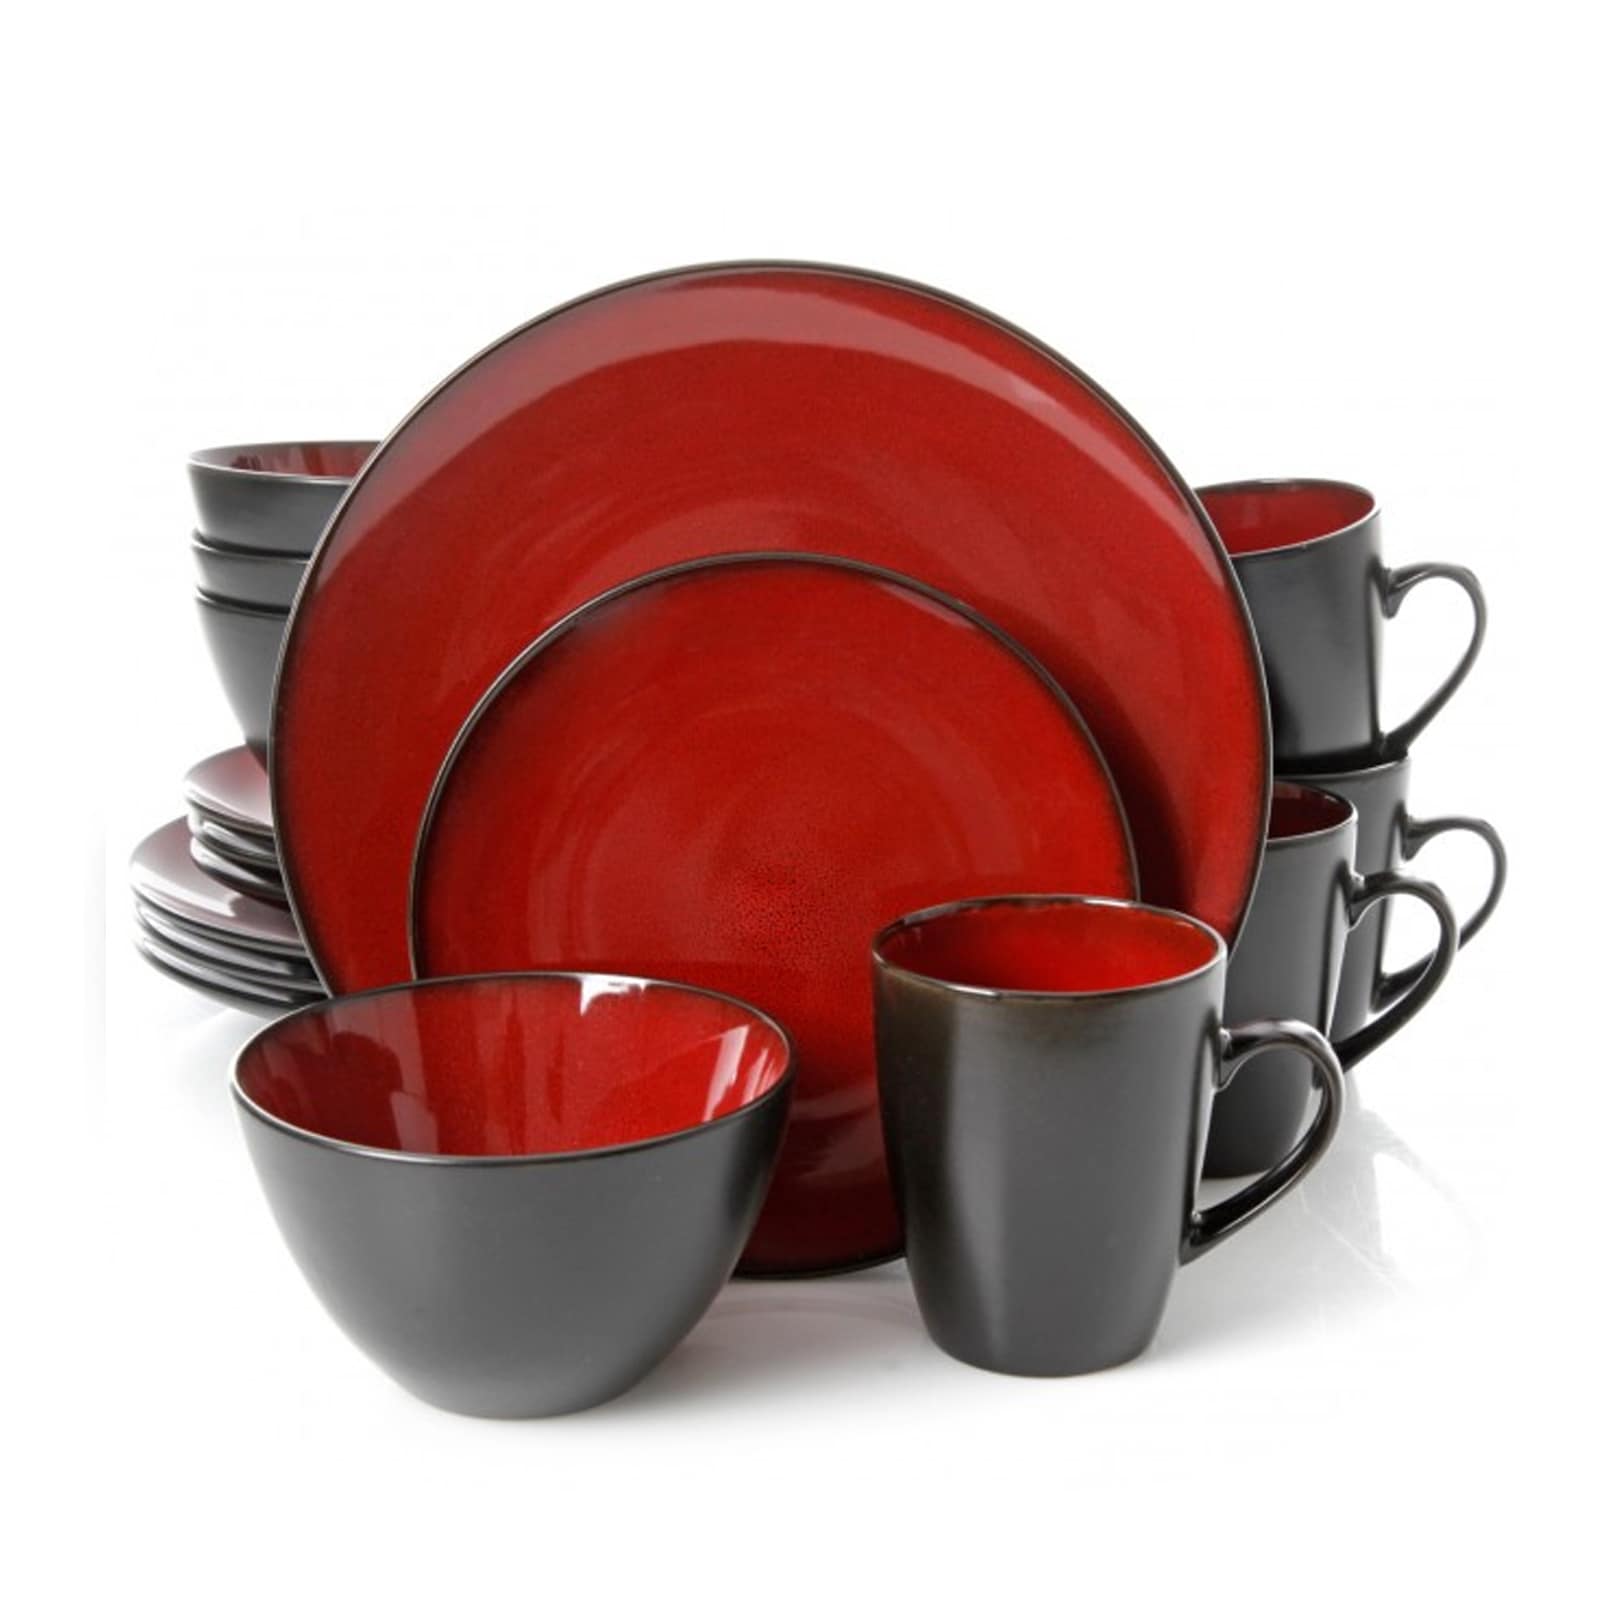 Купить красную посуду. Stoneware Dinnerware Set посуда. Красная посуда для кухни. Кухонная посуда красного цвета. Посуда с красной окантовкой.